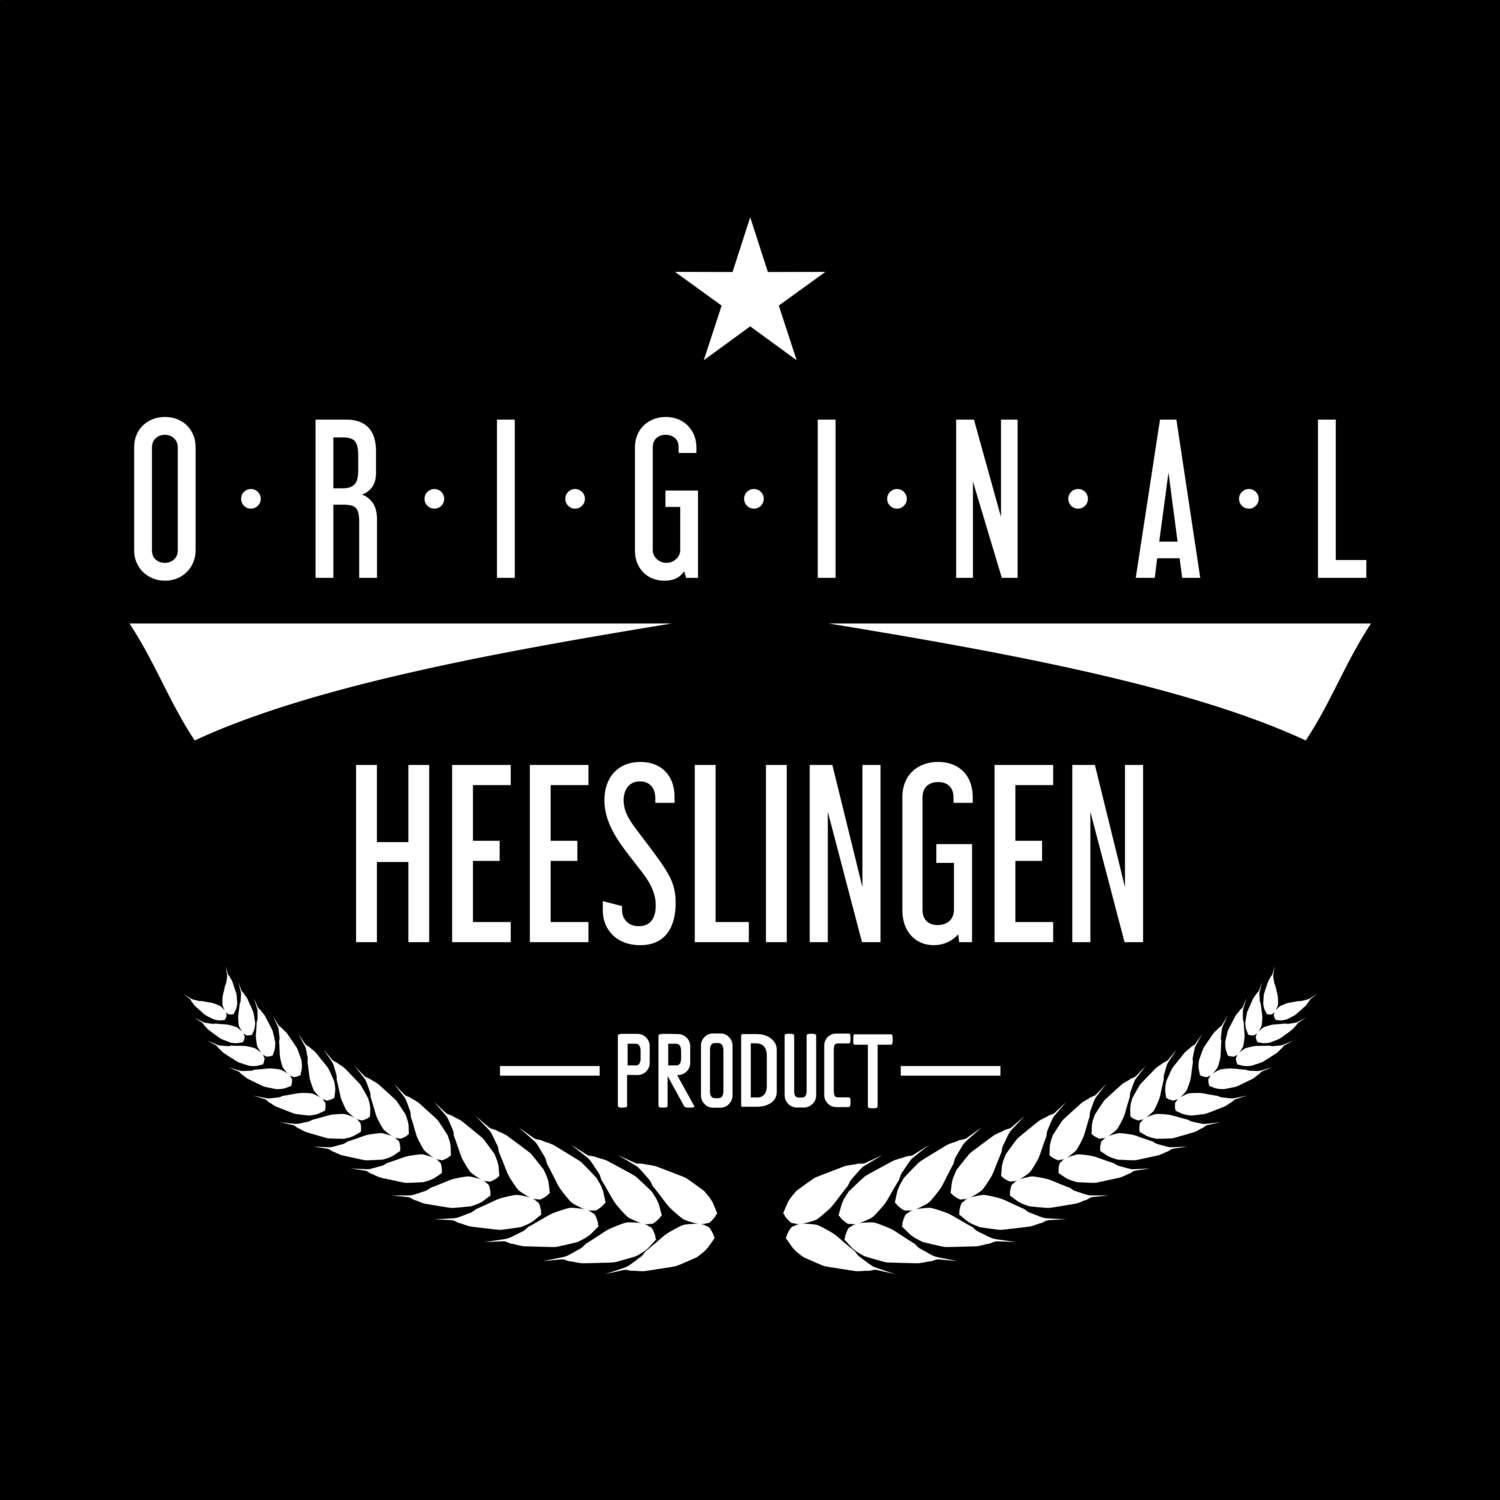 Heeslingen T-Shirt »Original Product«